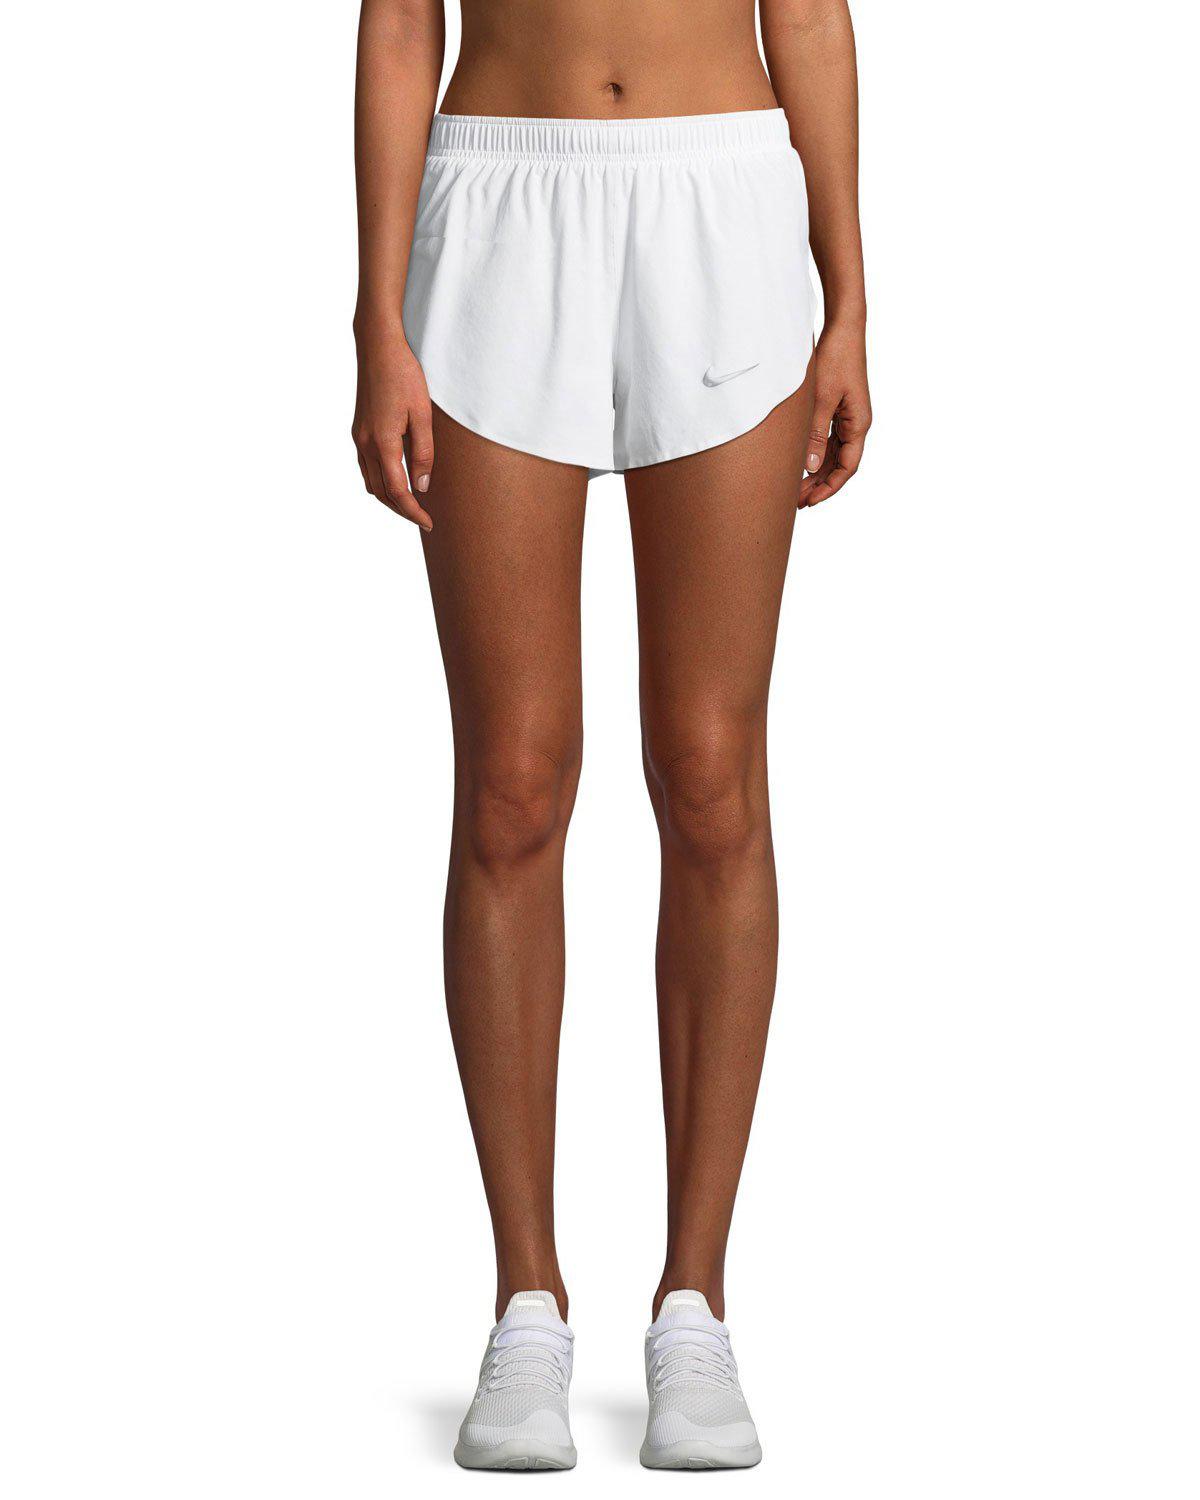 nike white athletic shorts